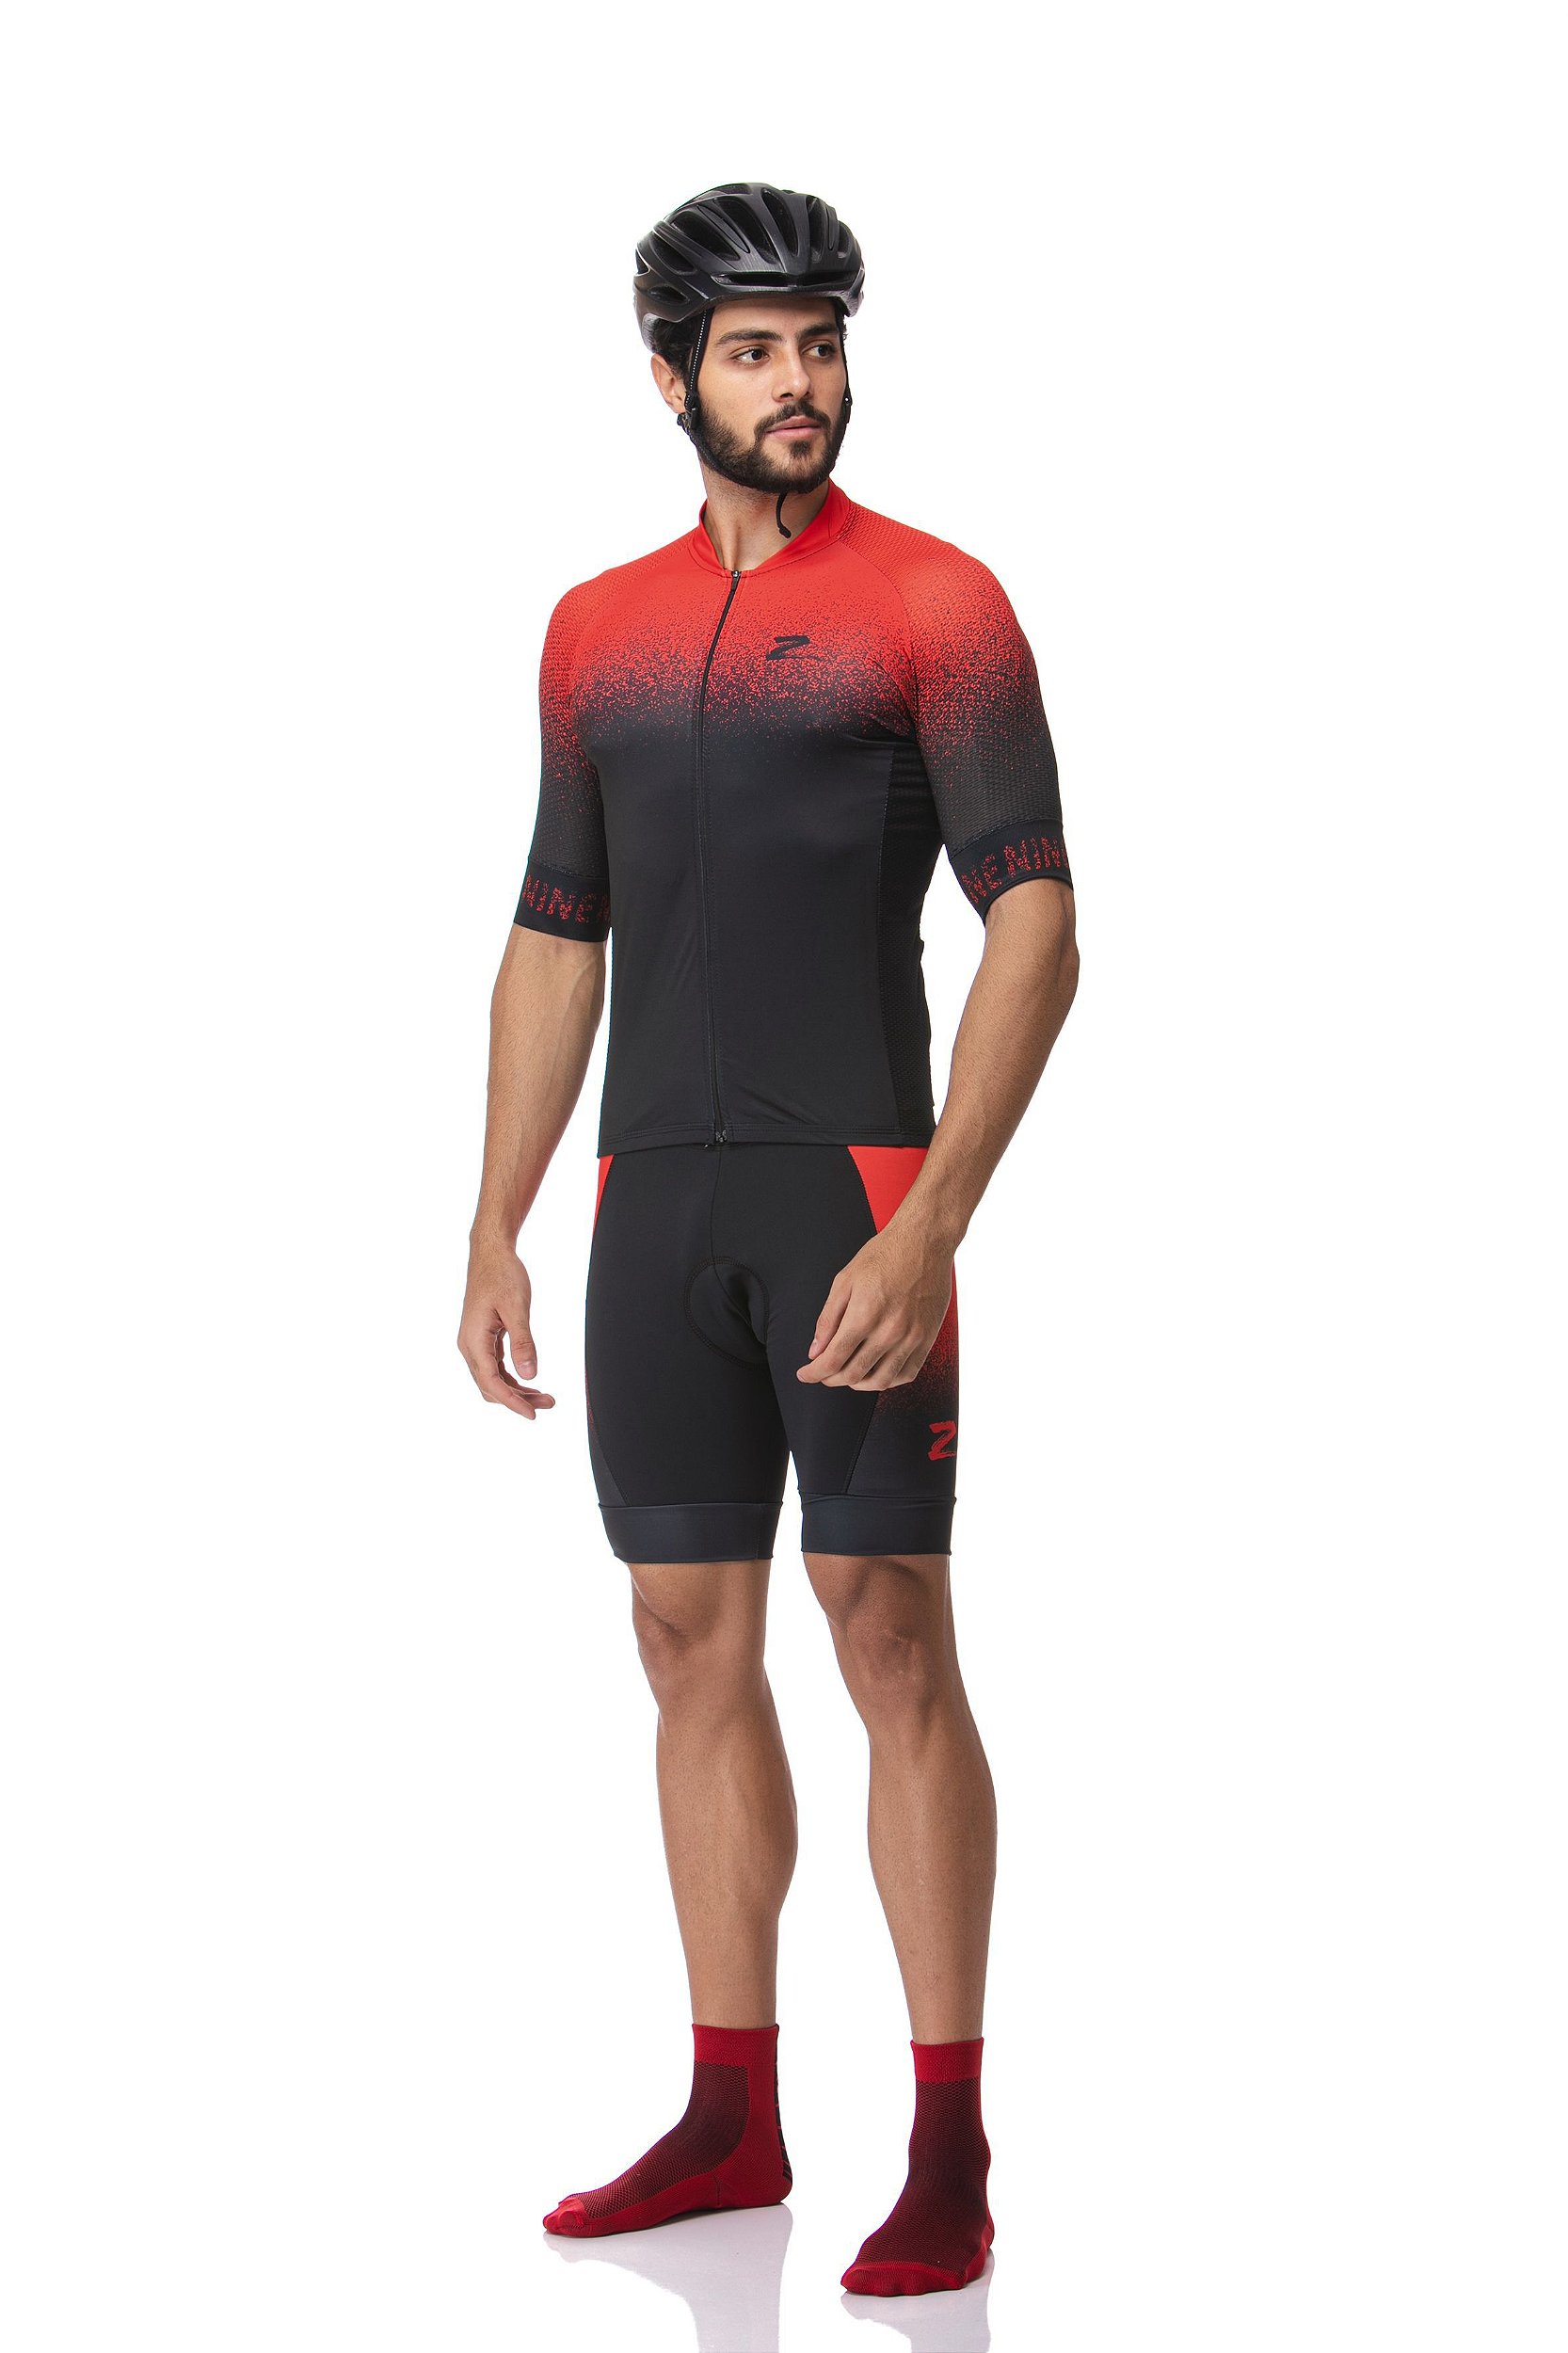 Camisa Ciclismo Z Nine Sport Red Jet Masculina Vermelha - CicleVest -  Roupas para Ciclismo com 10% OFF e Frete GRÁTIS*